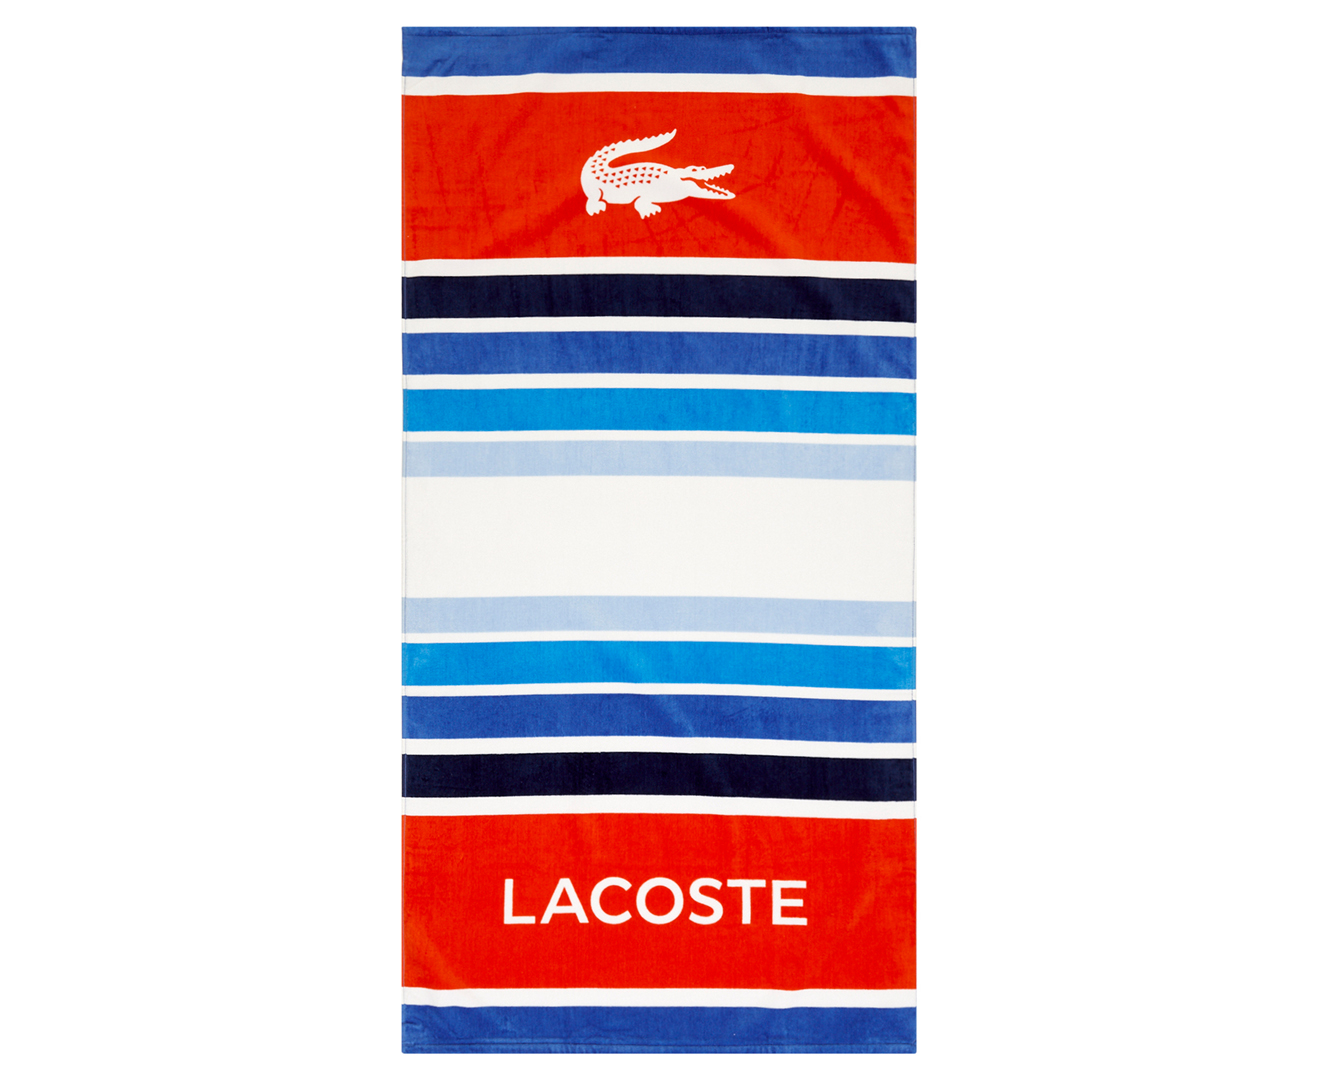 Lacoste Promenade Beach Towel - Blue/Red | Www.catch.co.nz